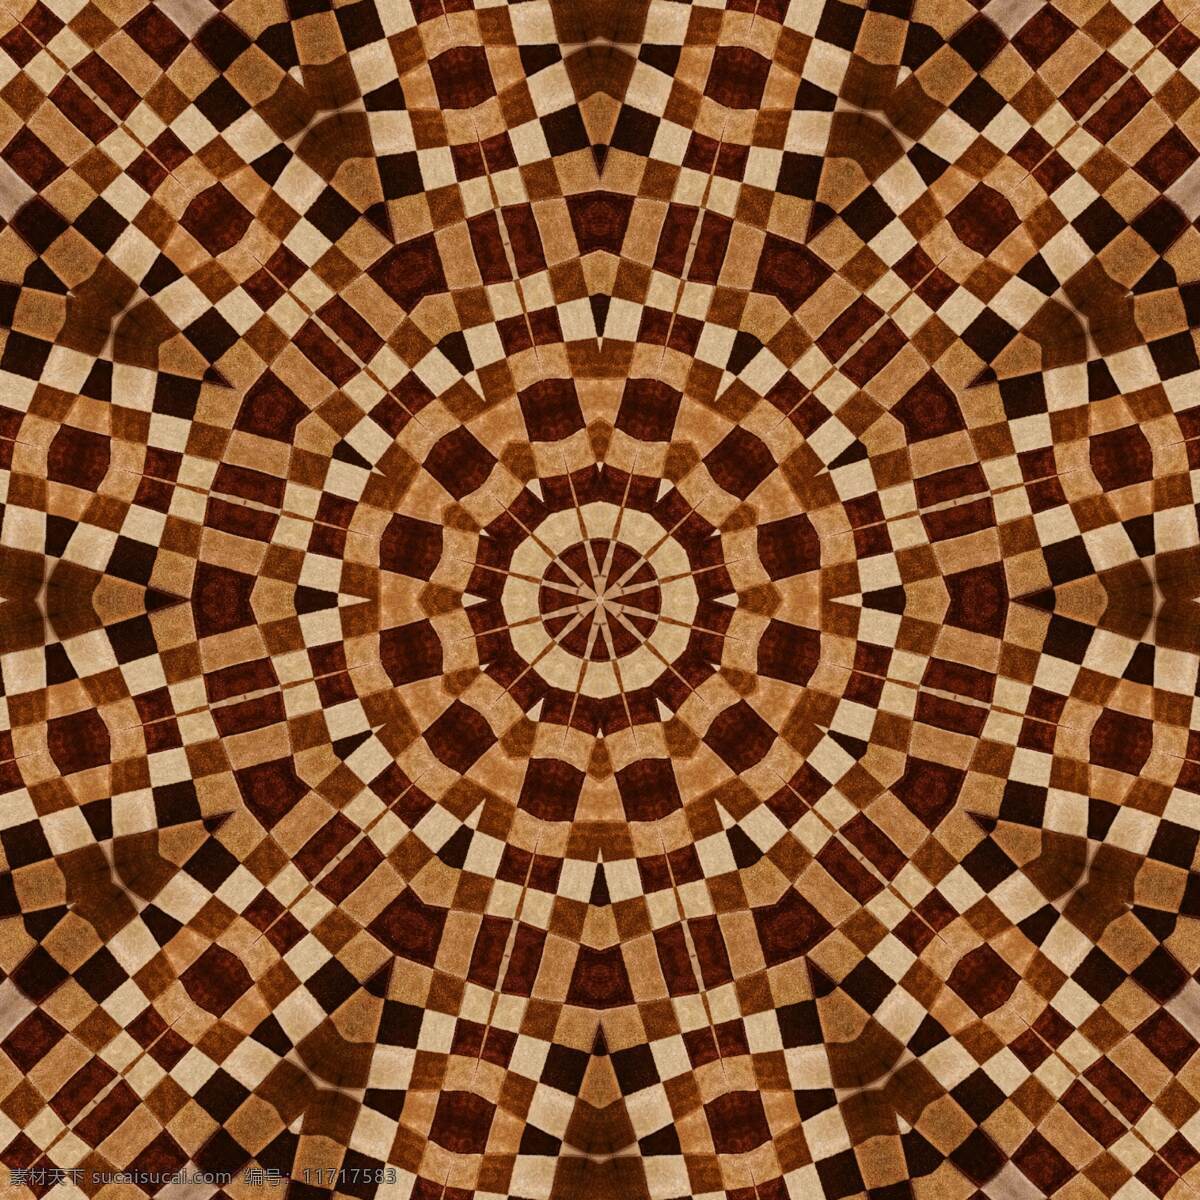 地毯图案 万花筒 地毯 毛毯 毛毯图案 抽象 艺术 抽象图案 艺术图案 贴图 抽象背景 艺术背景 棕色背景 生活百科 生活素材